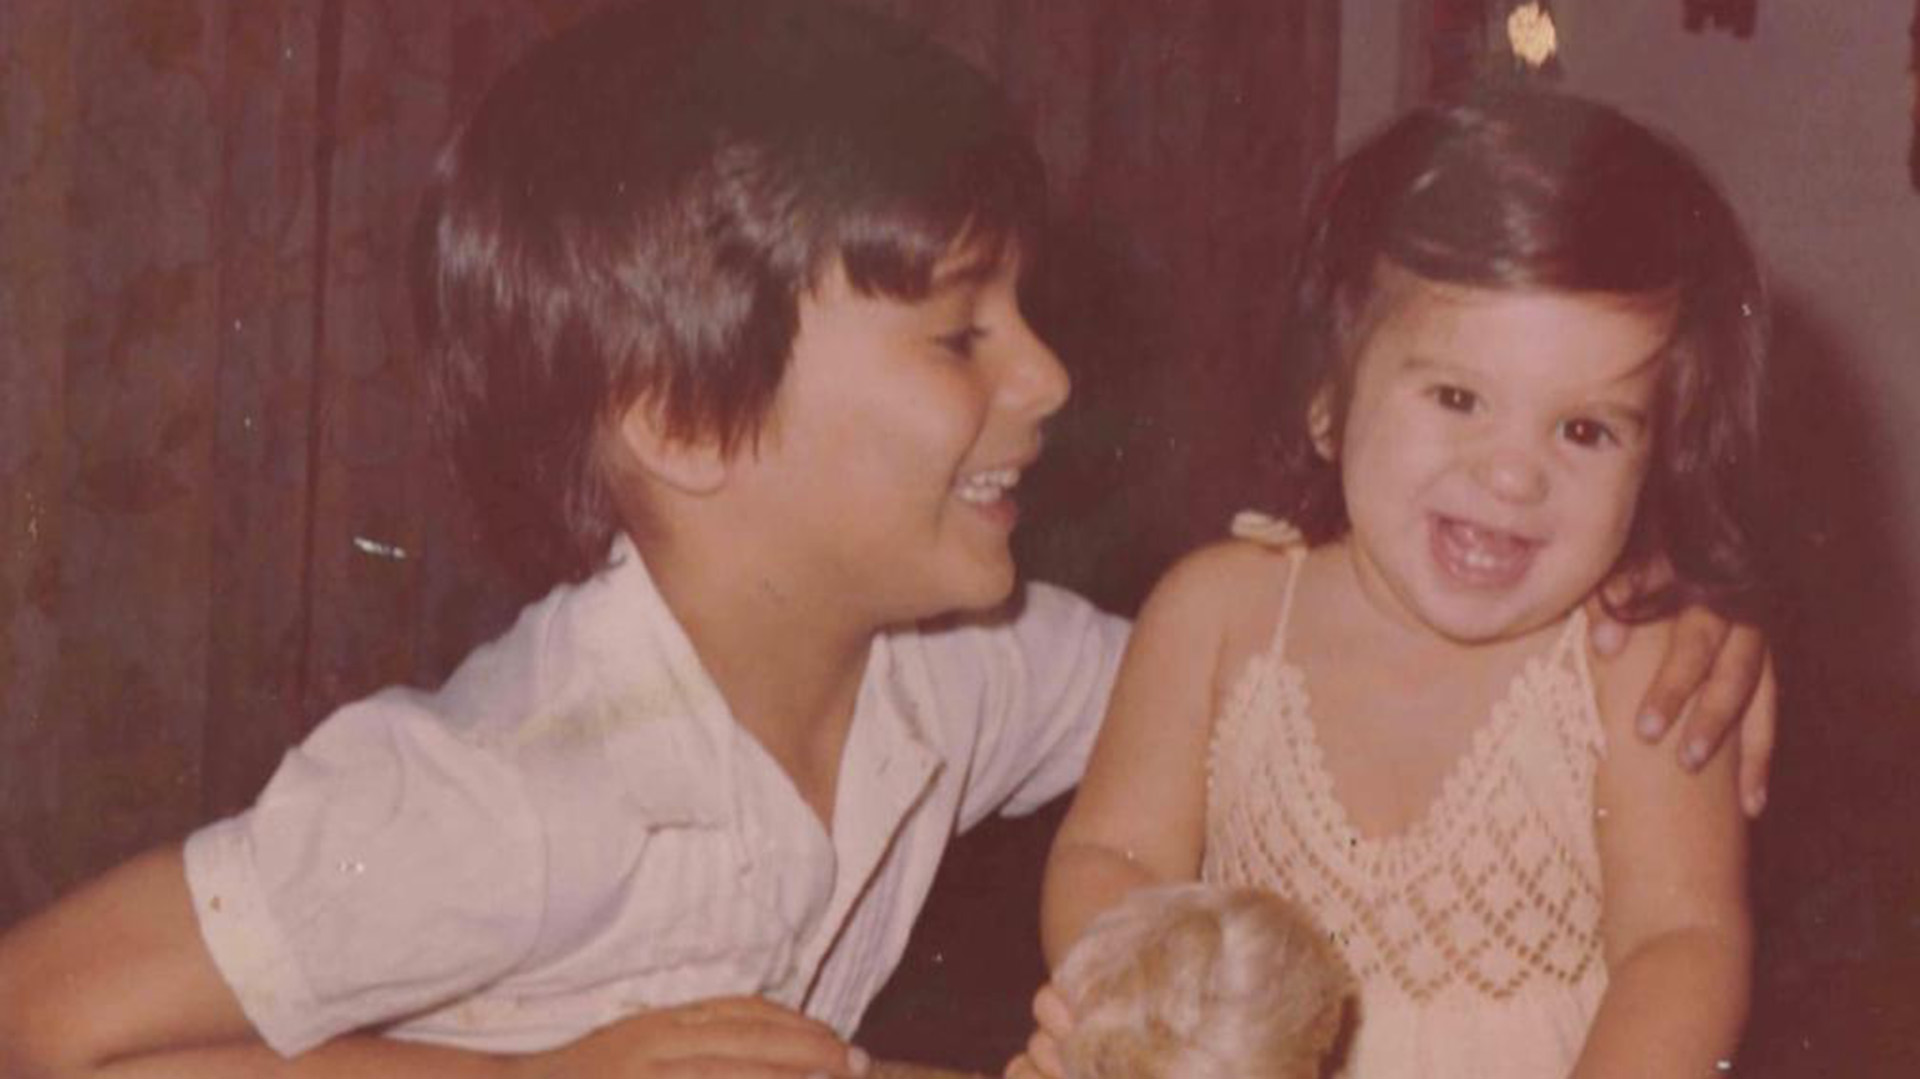 Elba Marcovecchio en 1980 (con dos años) junto a Sergio, el menor de sus tres hermanos